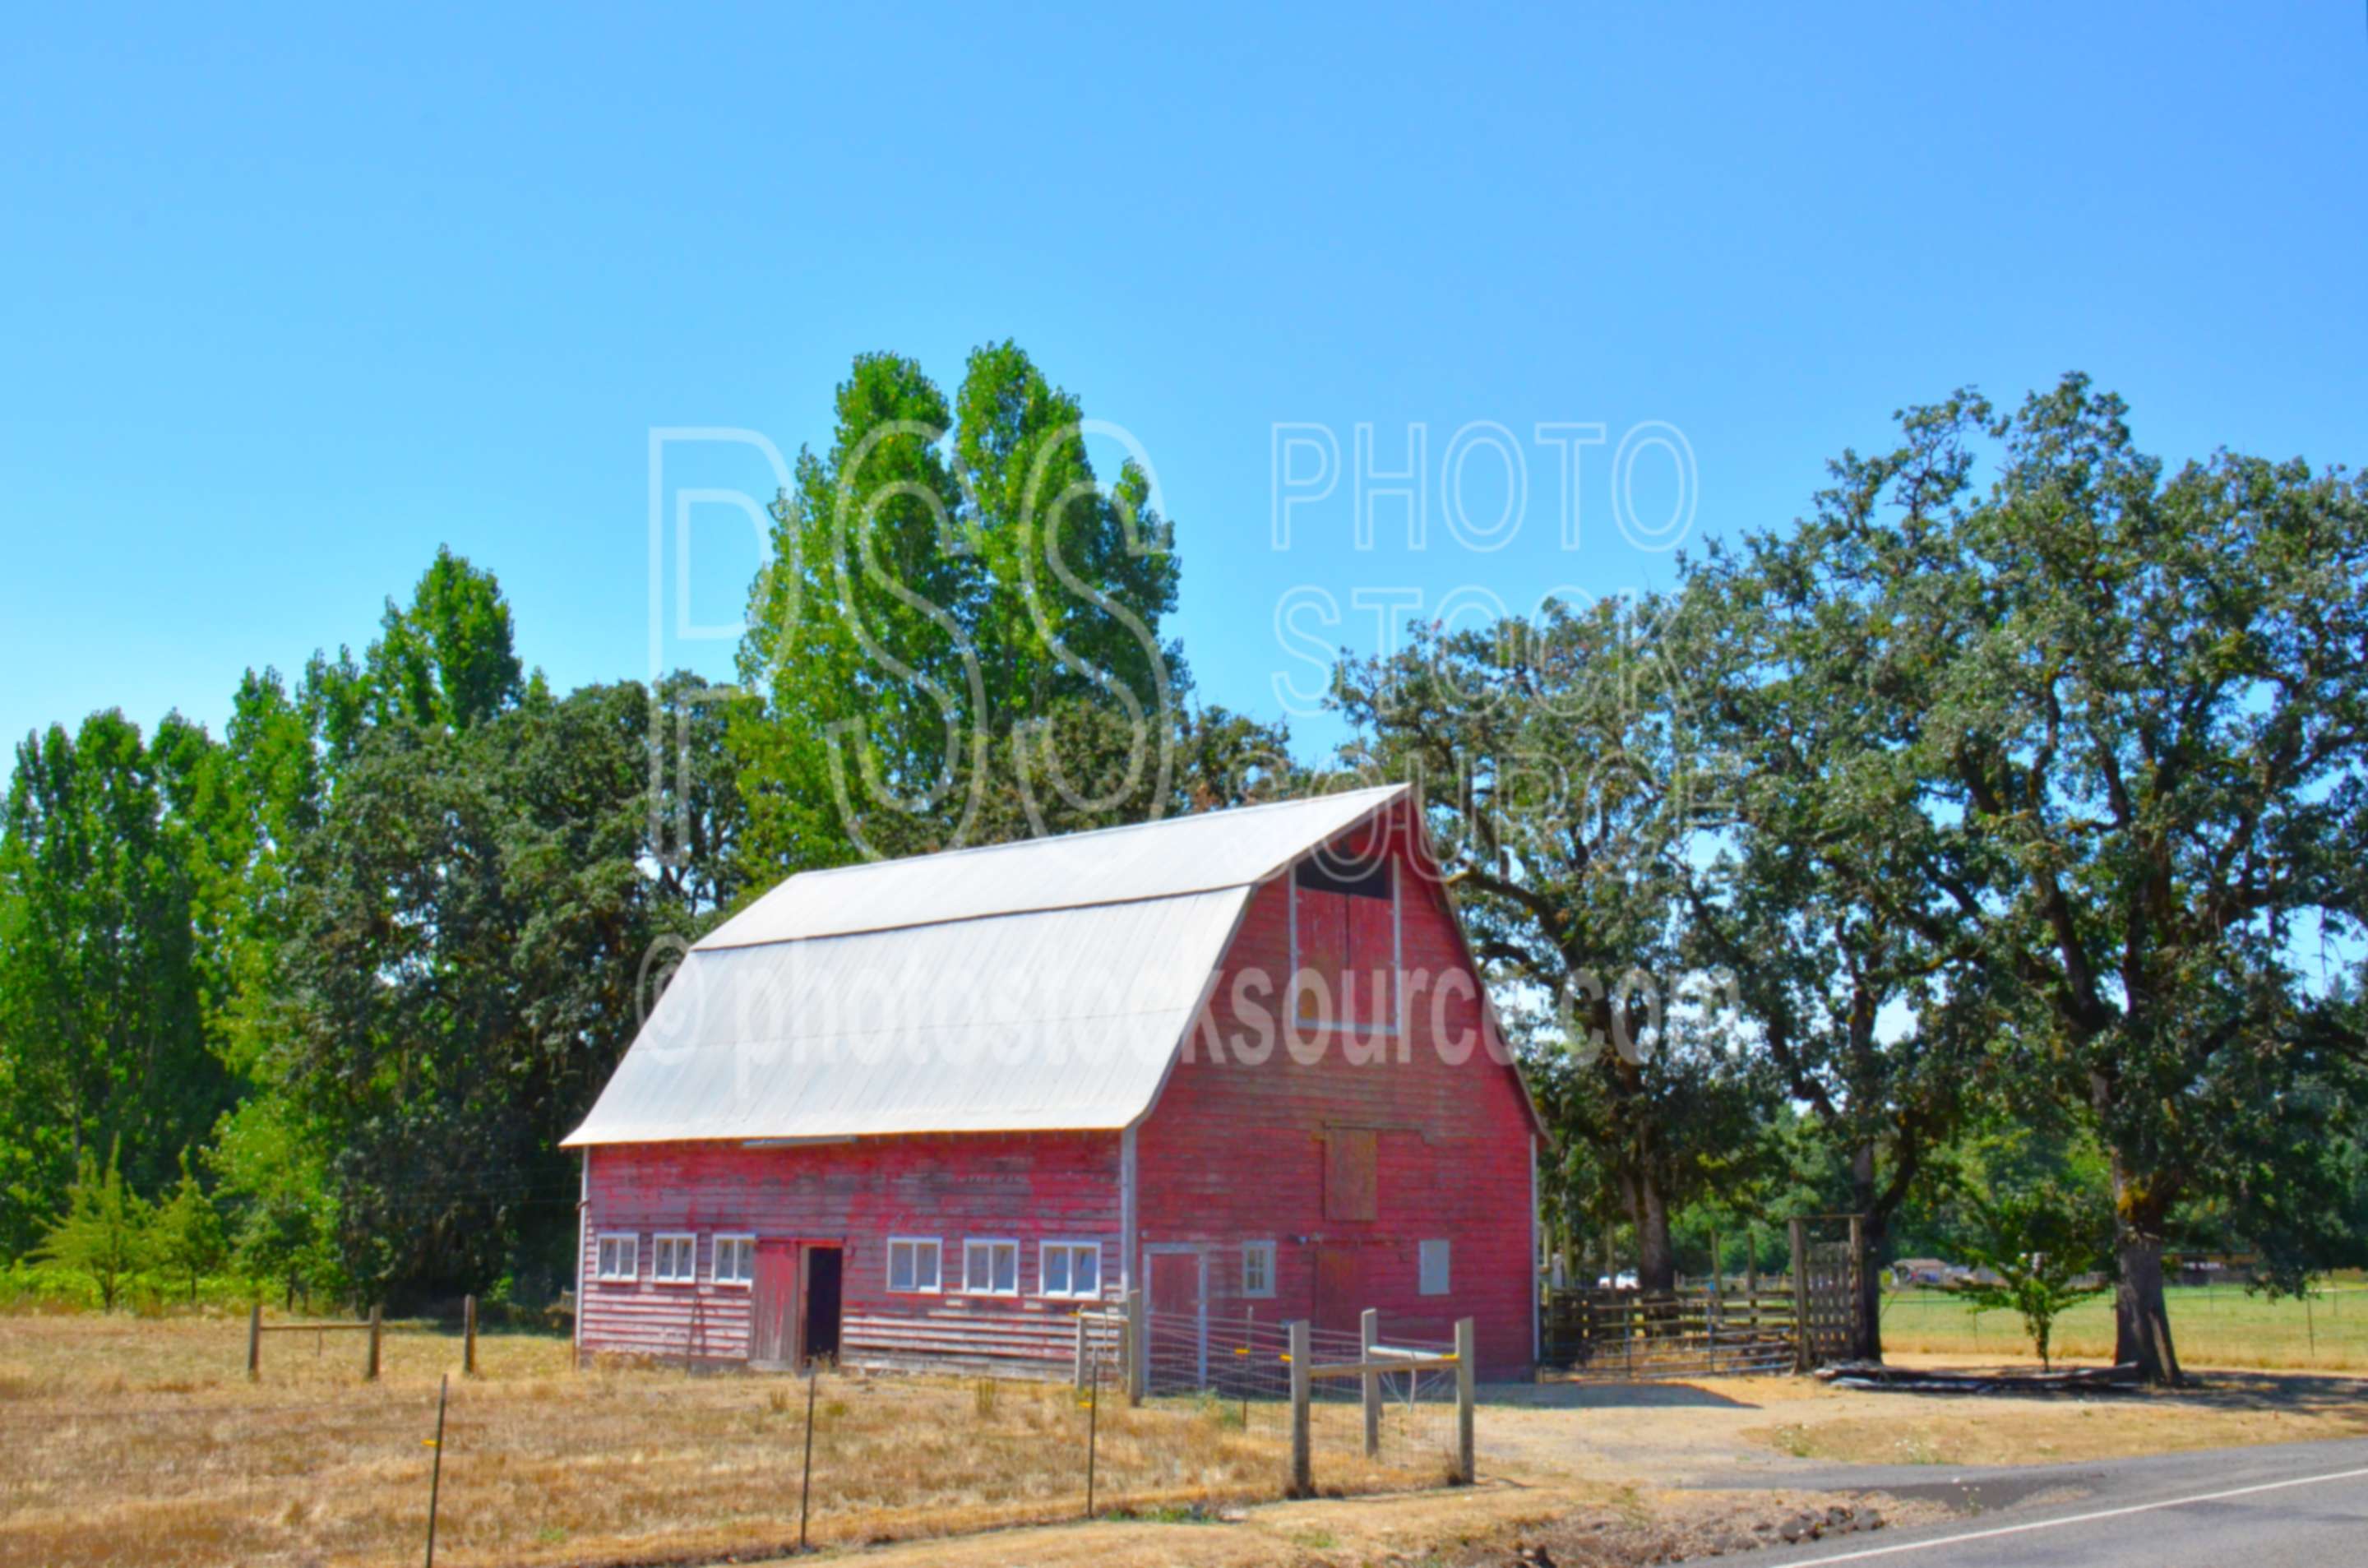 Red Barn,barn,farm,trees,fence